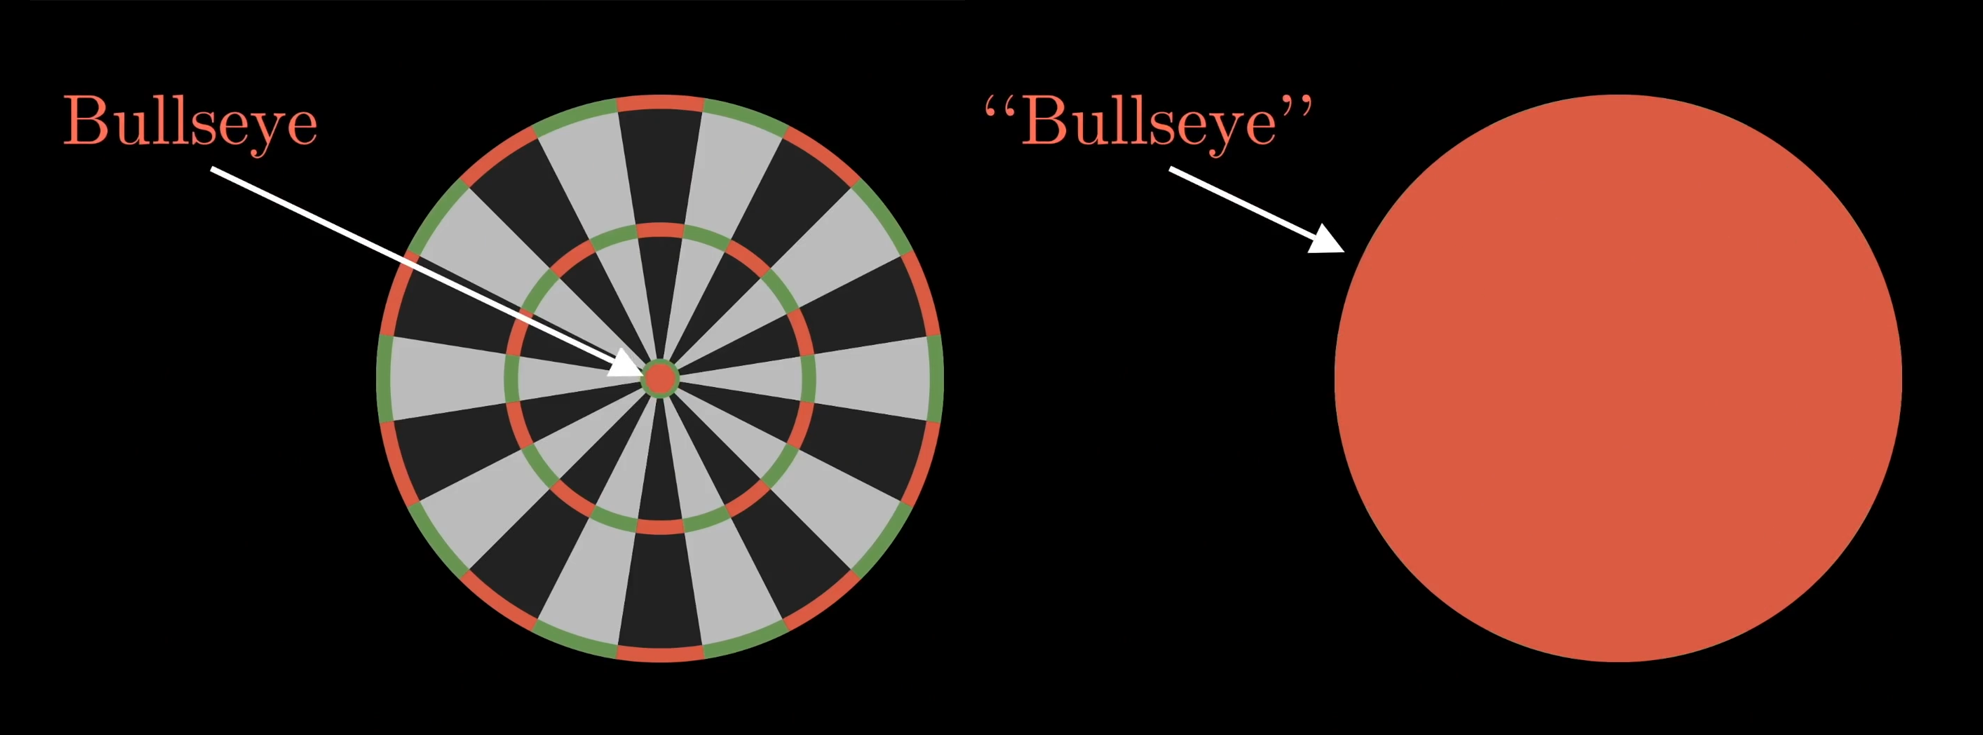 Optimal dartboard hits the bullseye, Mathematics